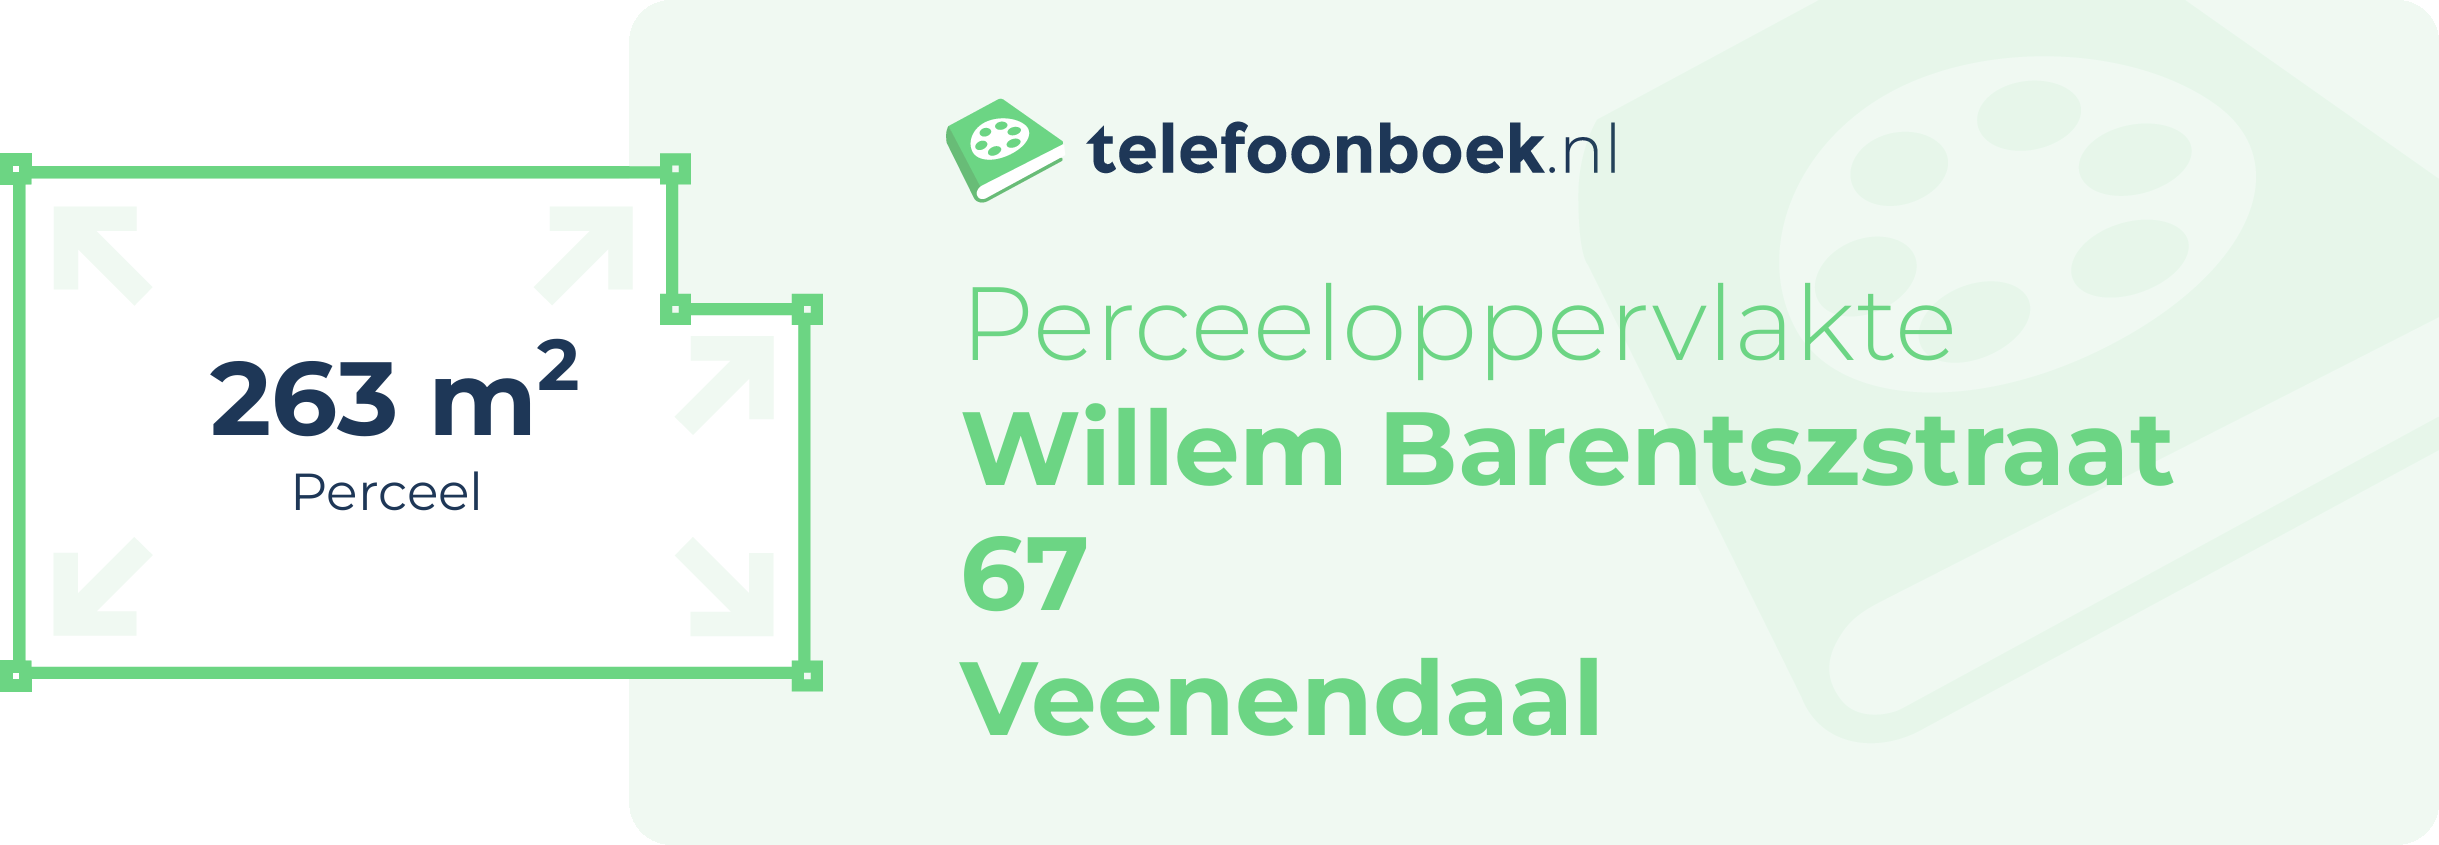 Perceeloppervlakte Willem Barentszstraat 67 Veenendaal